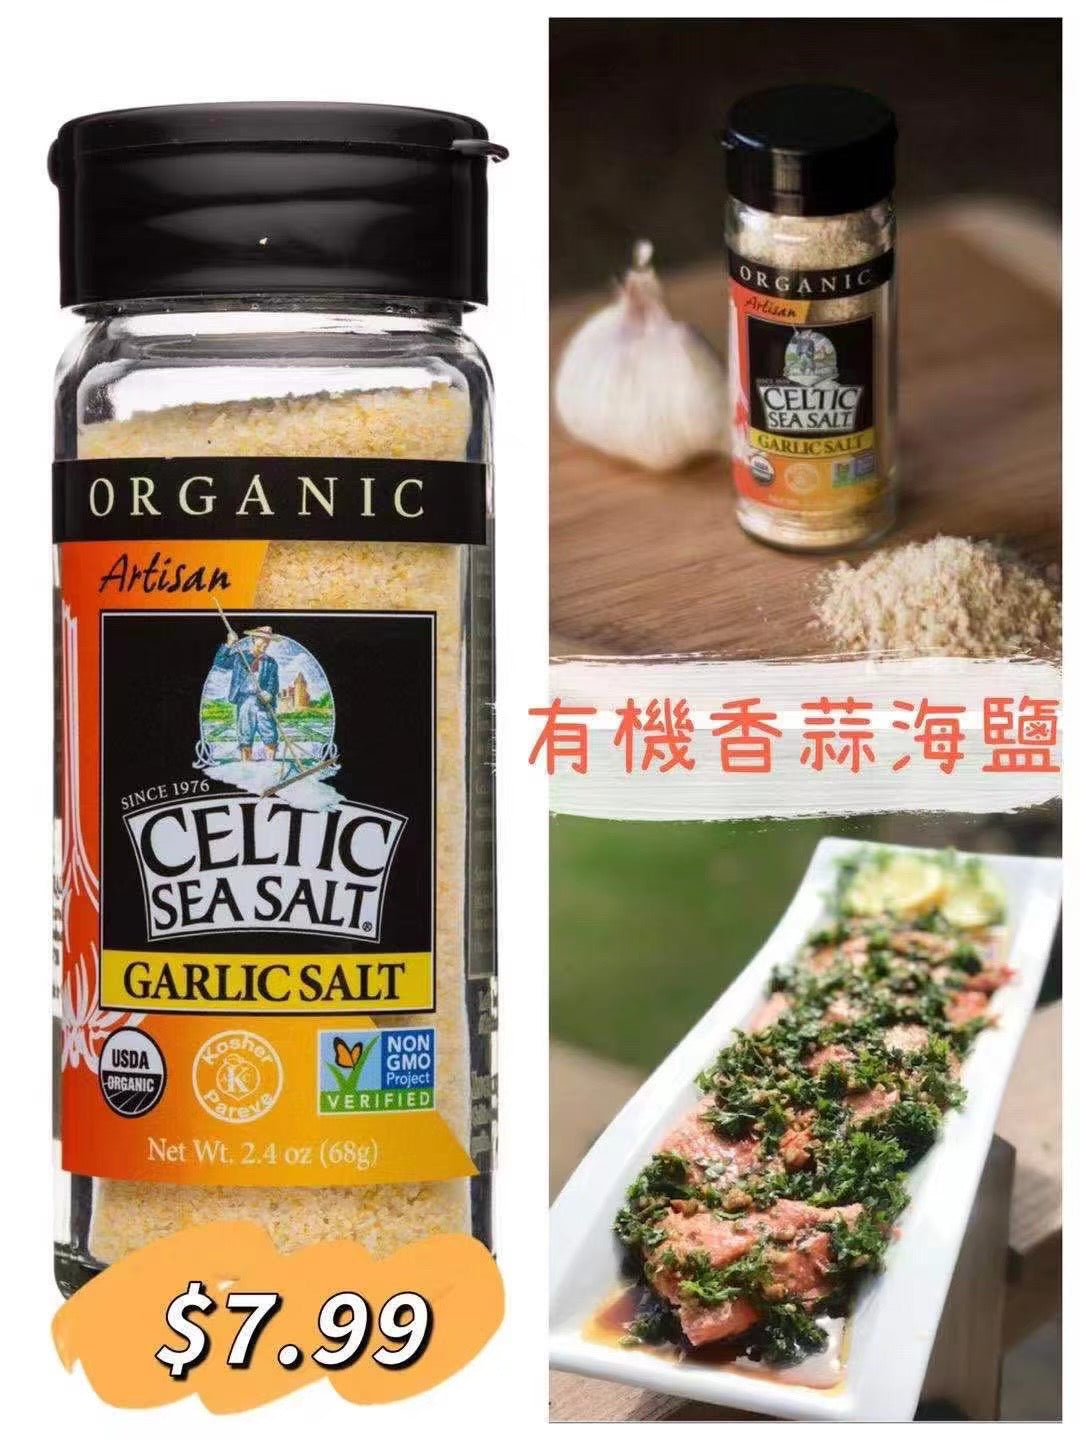 ✅ Celtic Sea Salt 3.0 oz. Garlic Salt shaker